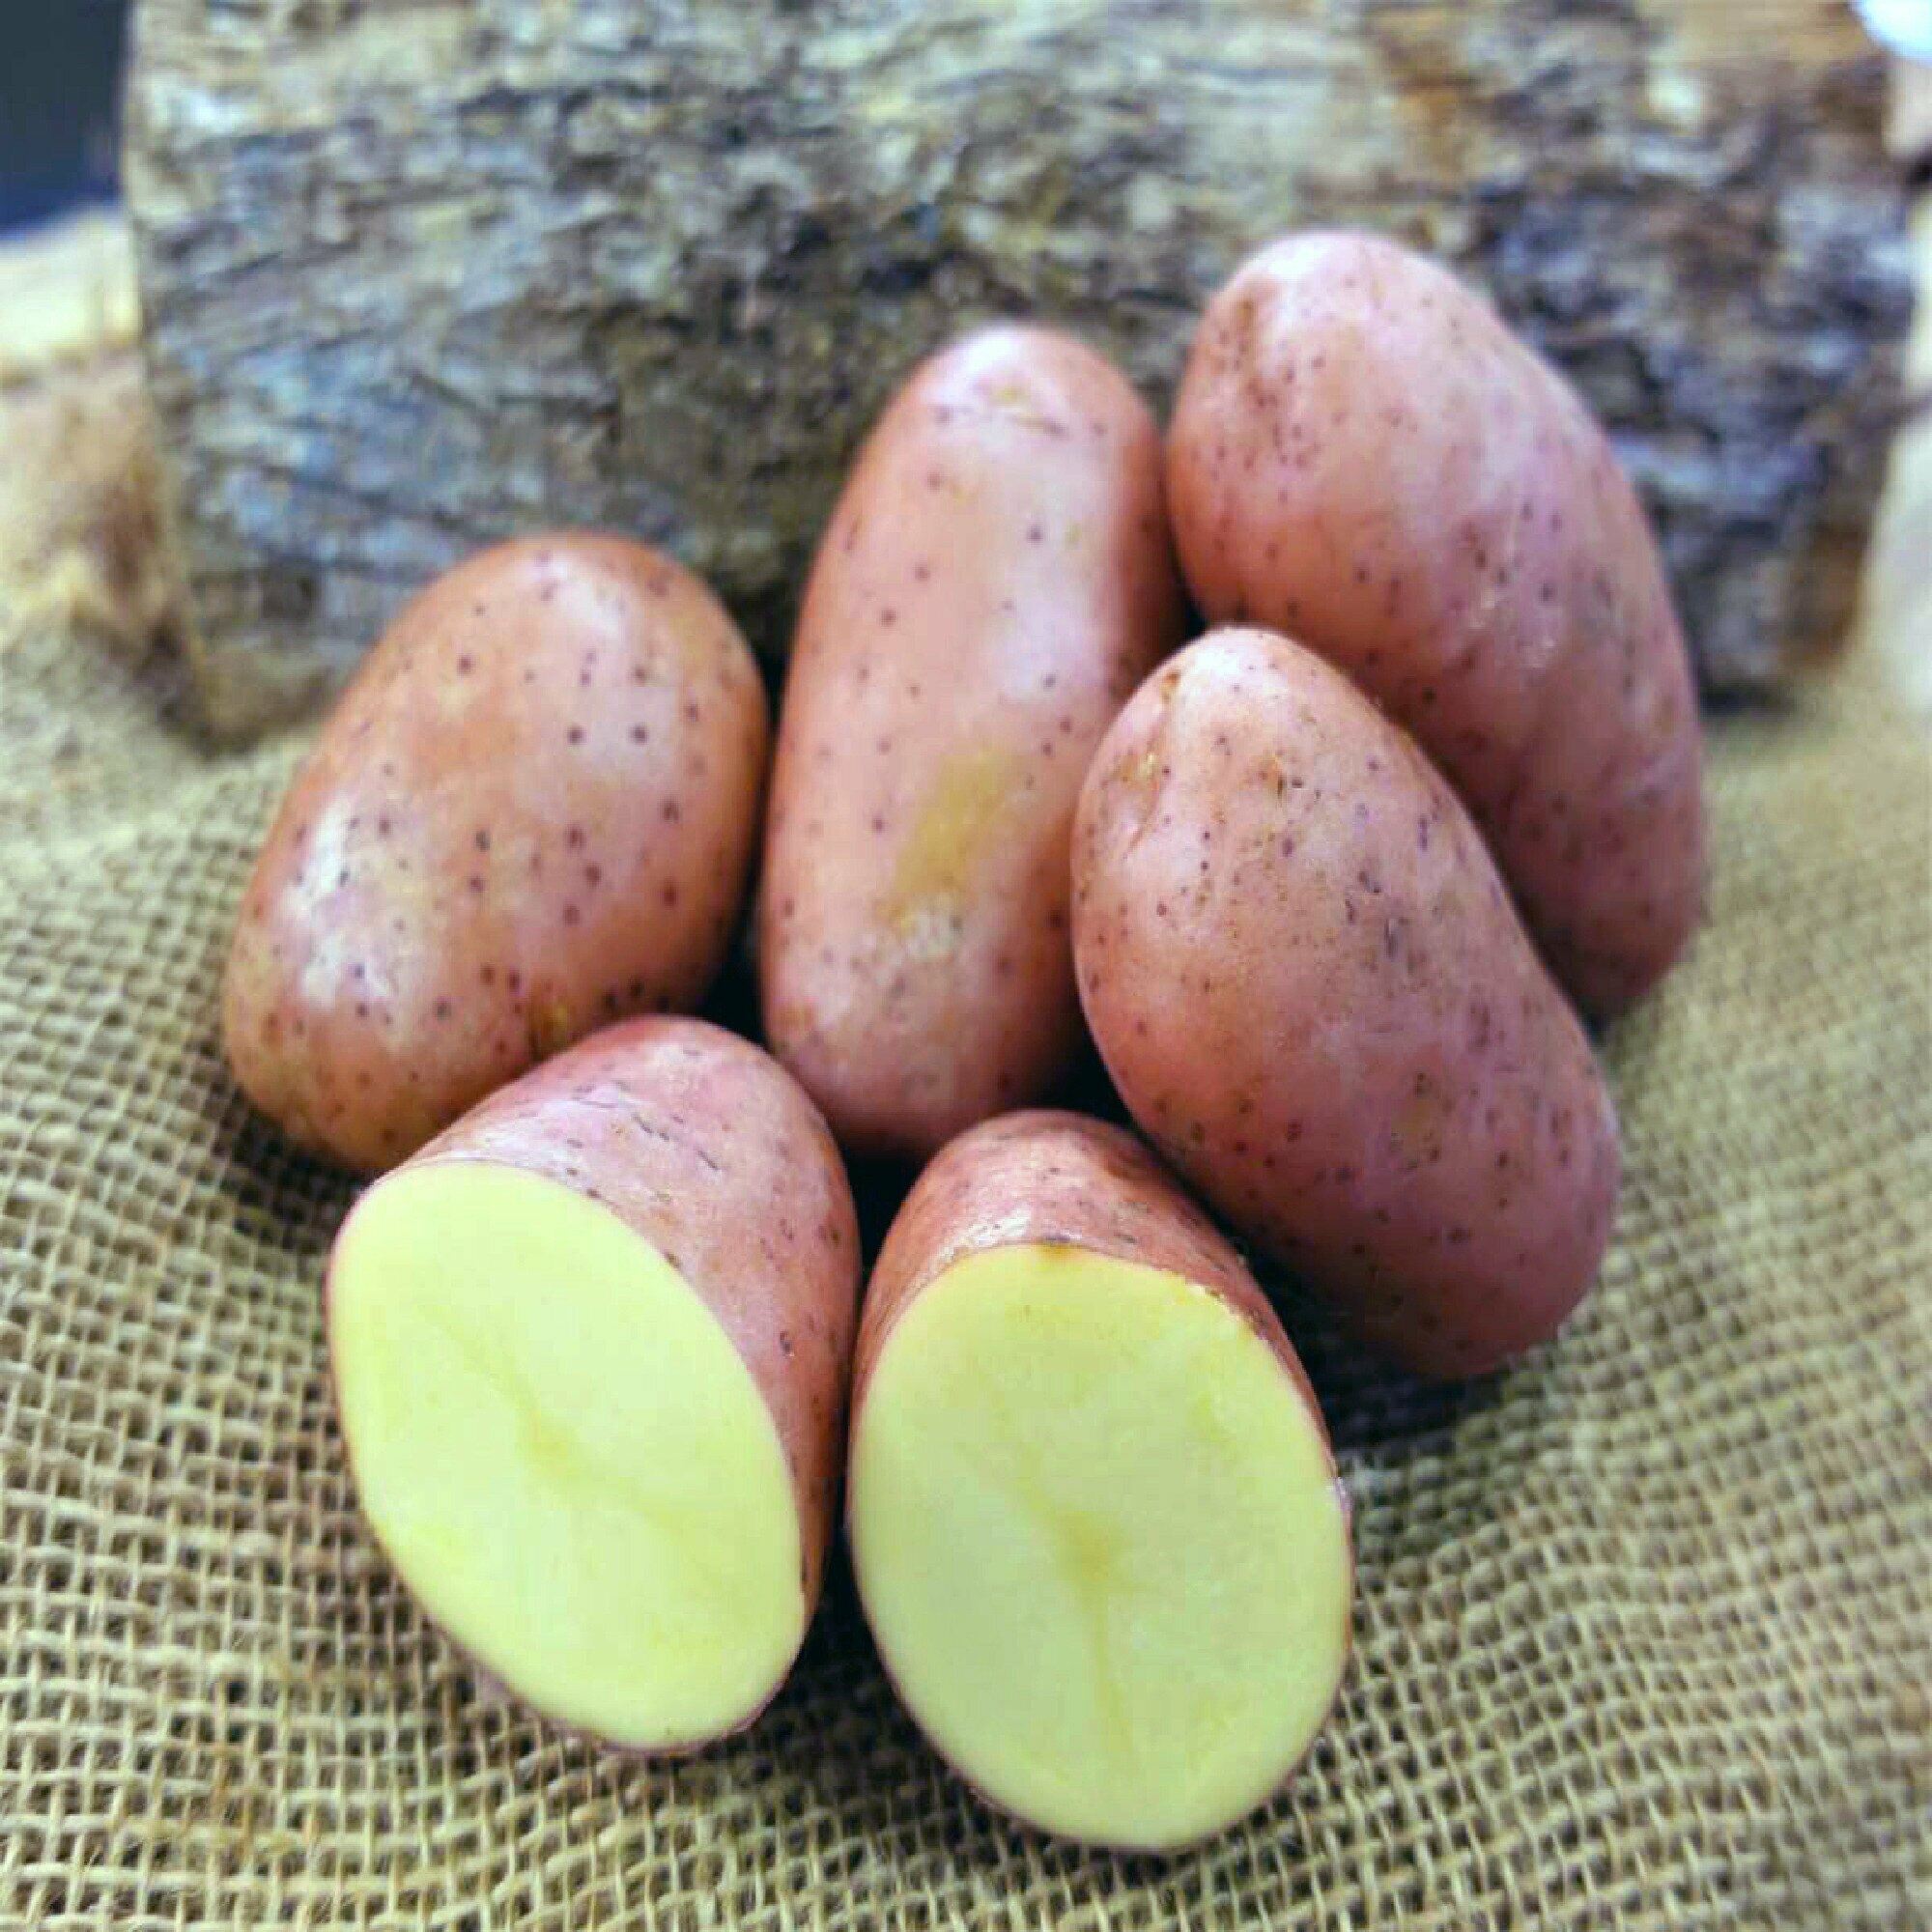 Ред Скарлет, семенной картофель, 2 кг, ранний сорт голландской селекции, высокая и стабильная урожайность, продолжительный период хранения, прекрасный вкус при жарке и в супах